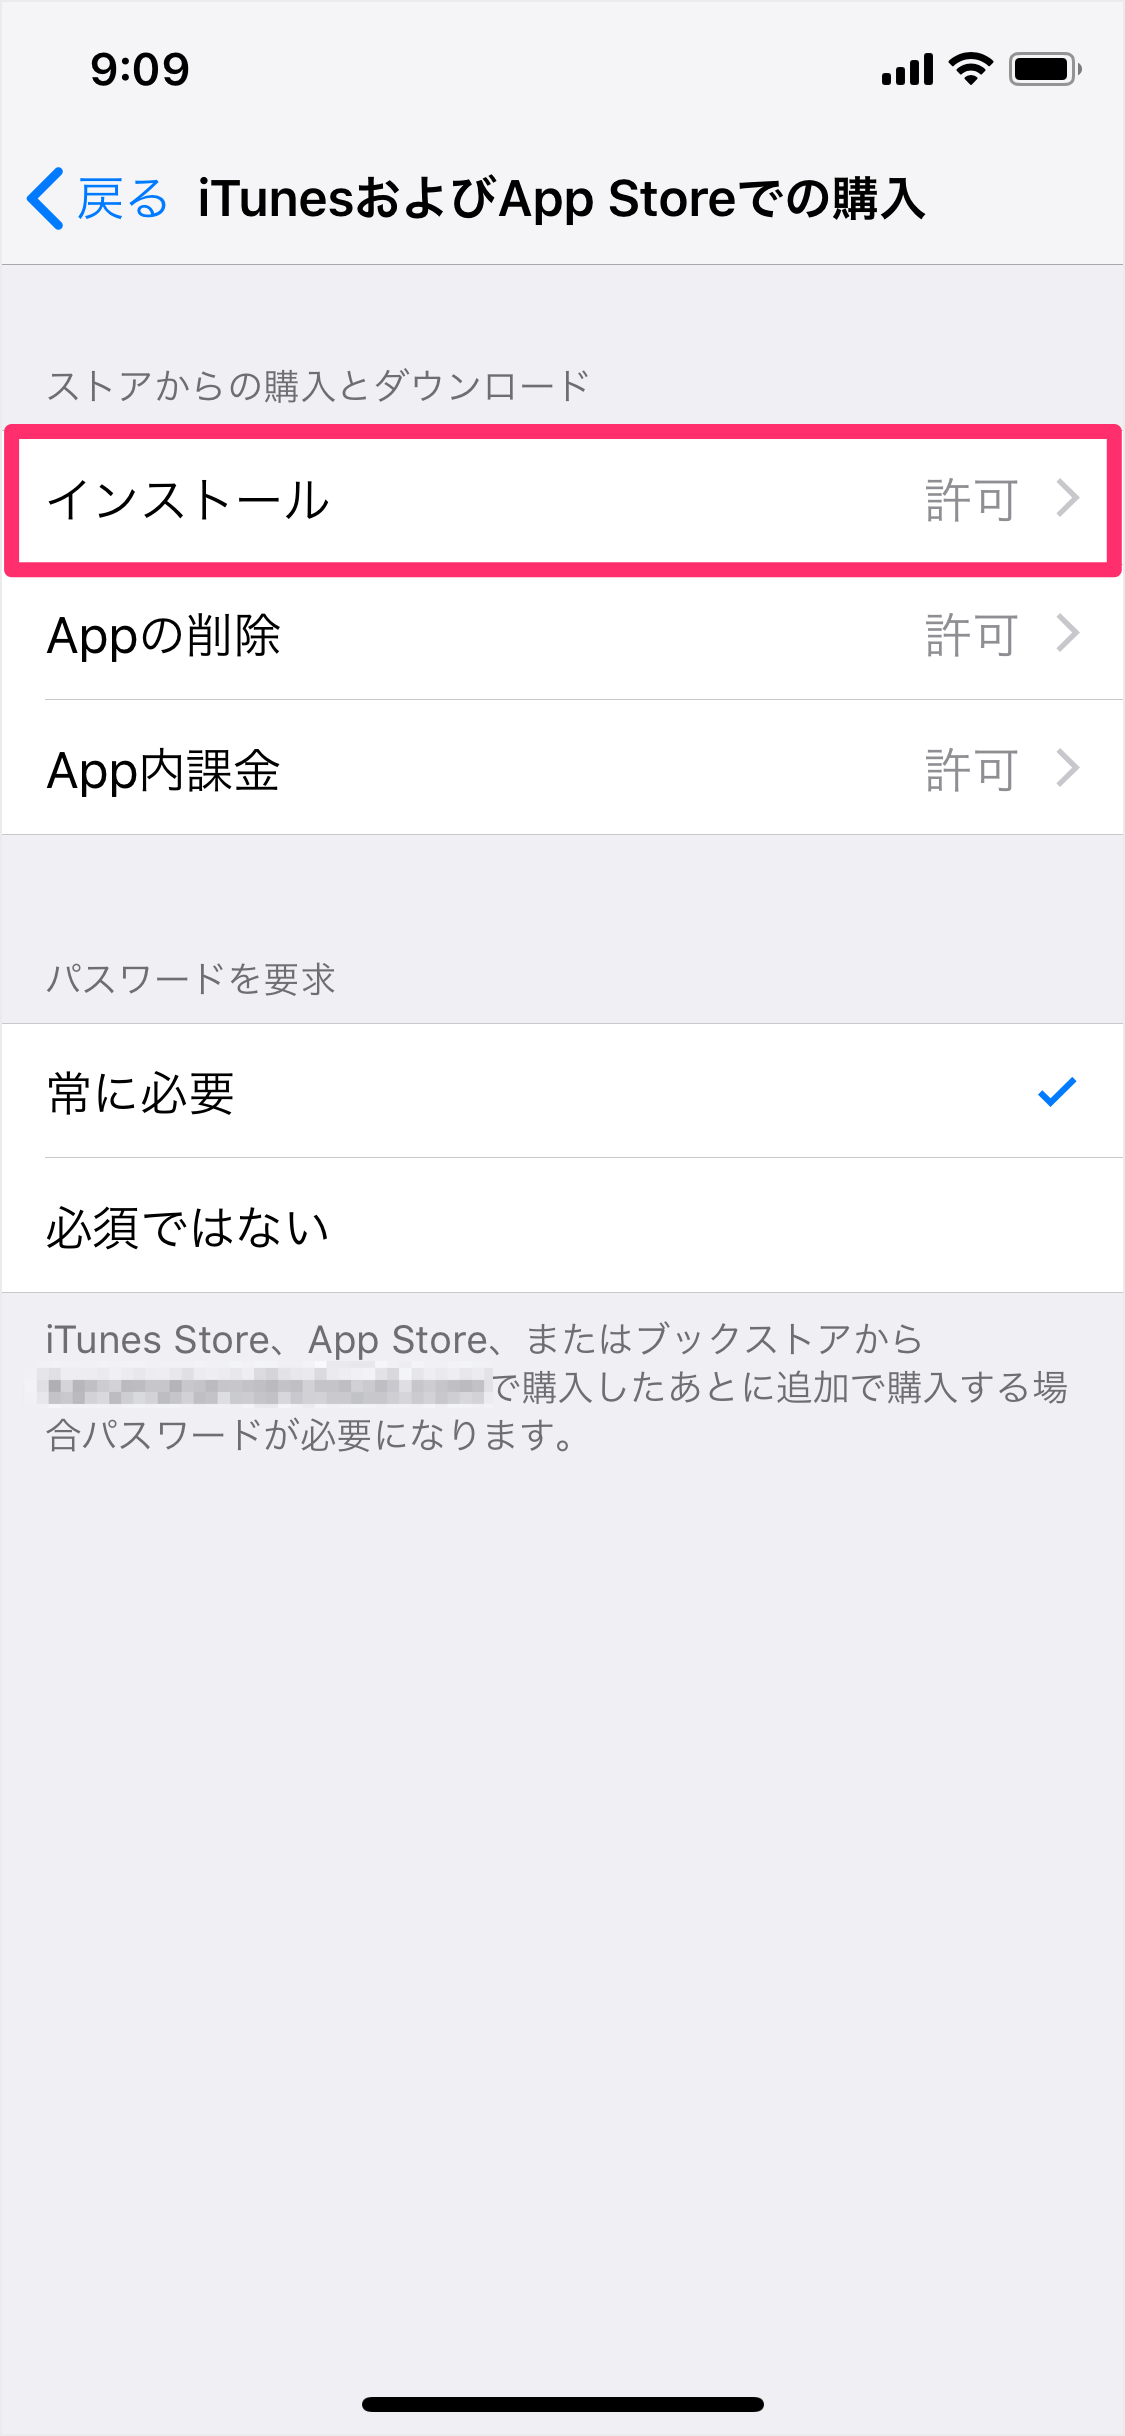 Iphone Ipad アプリのインストール 削除 課金を禁止 スクリーンタイム Pc設定のカルマ